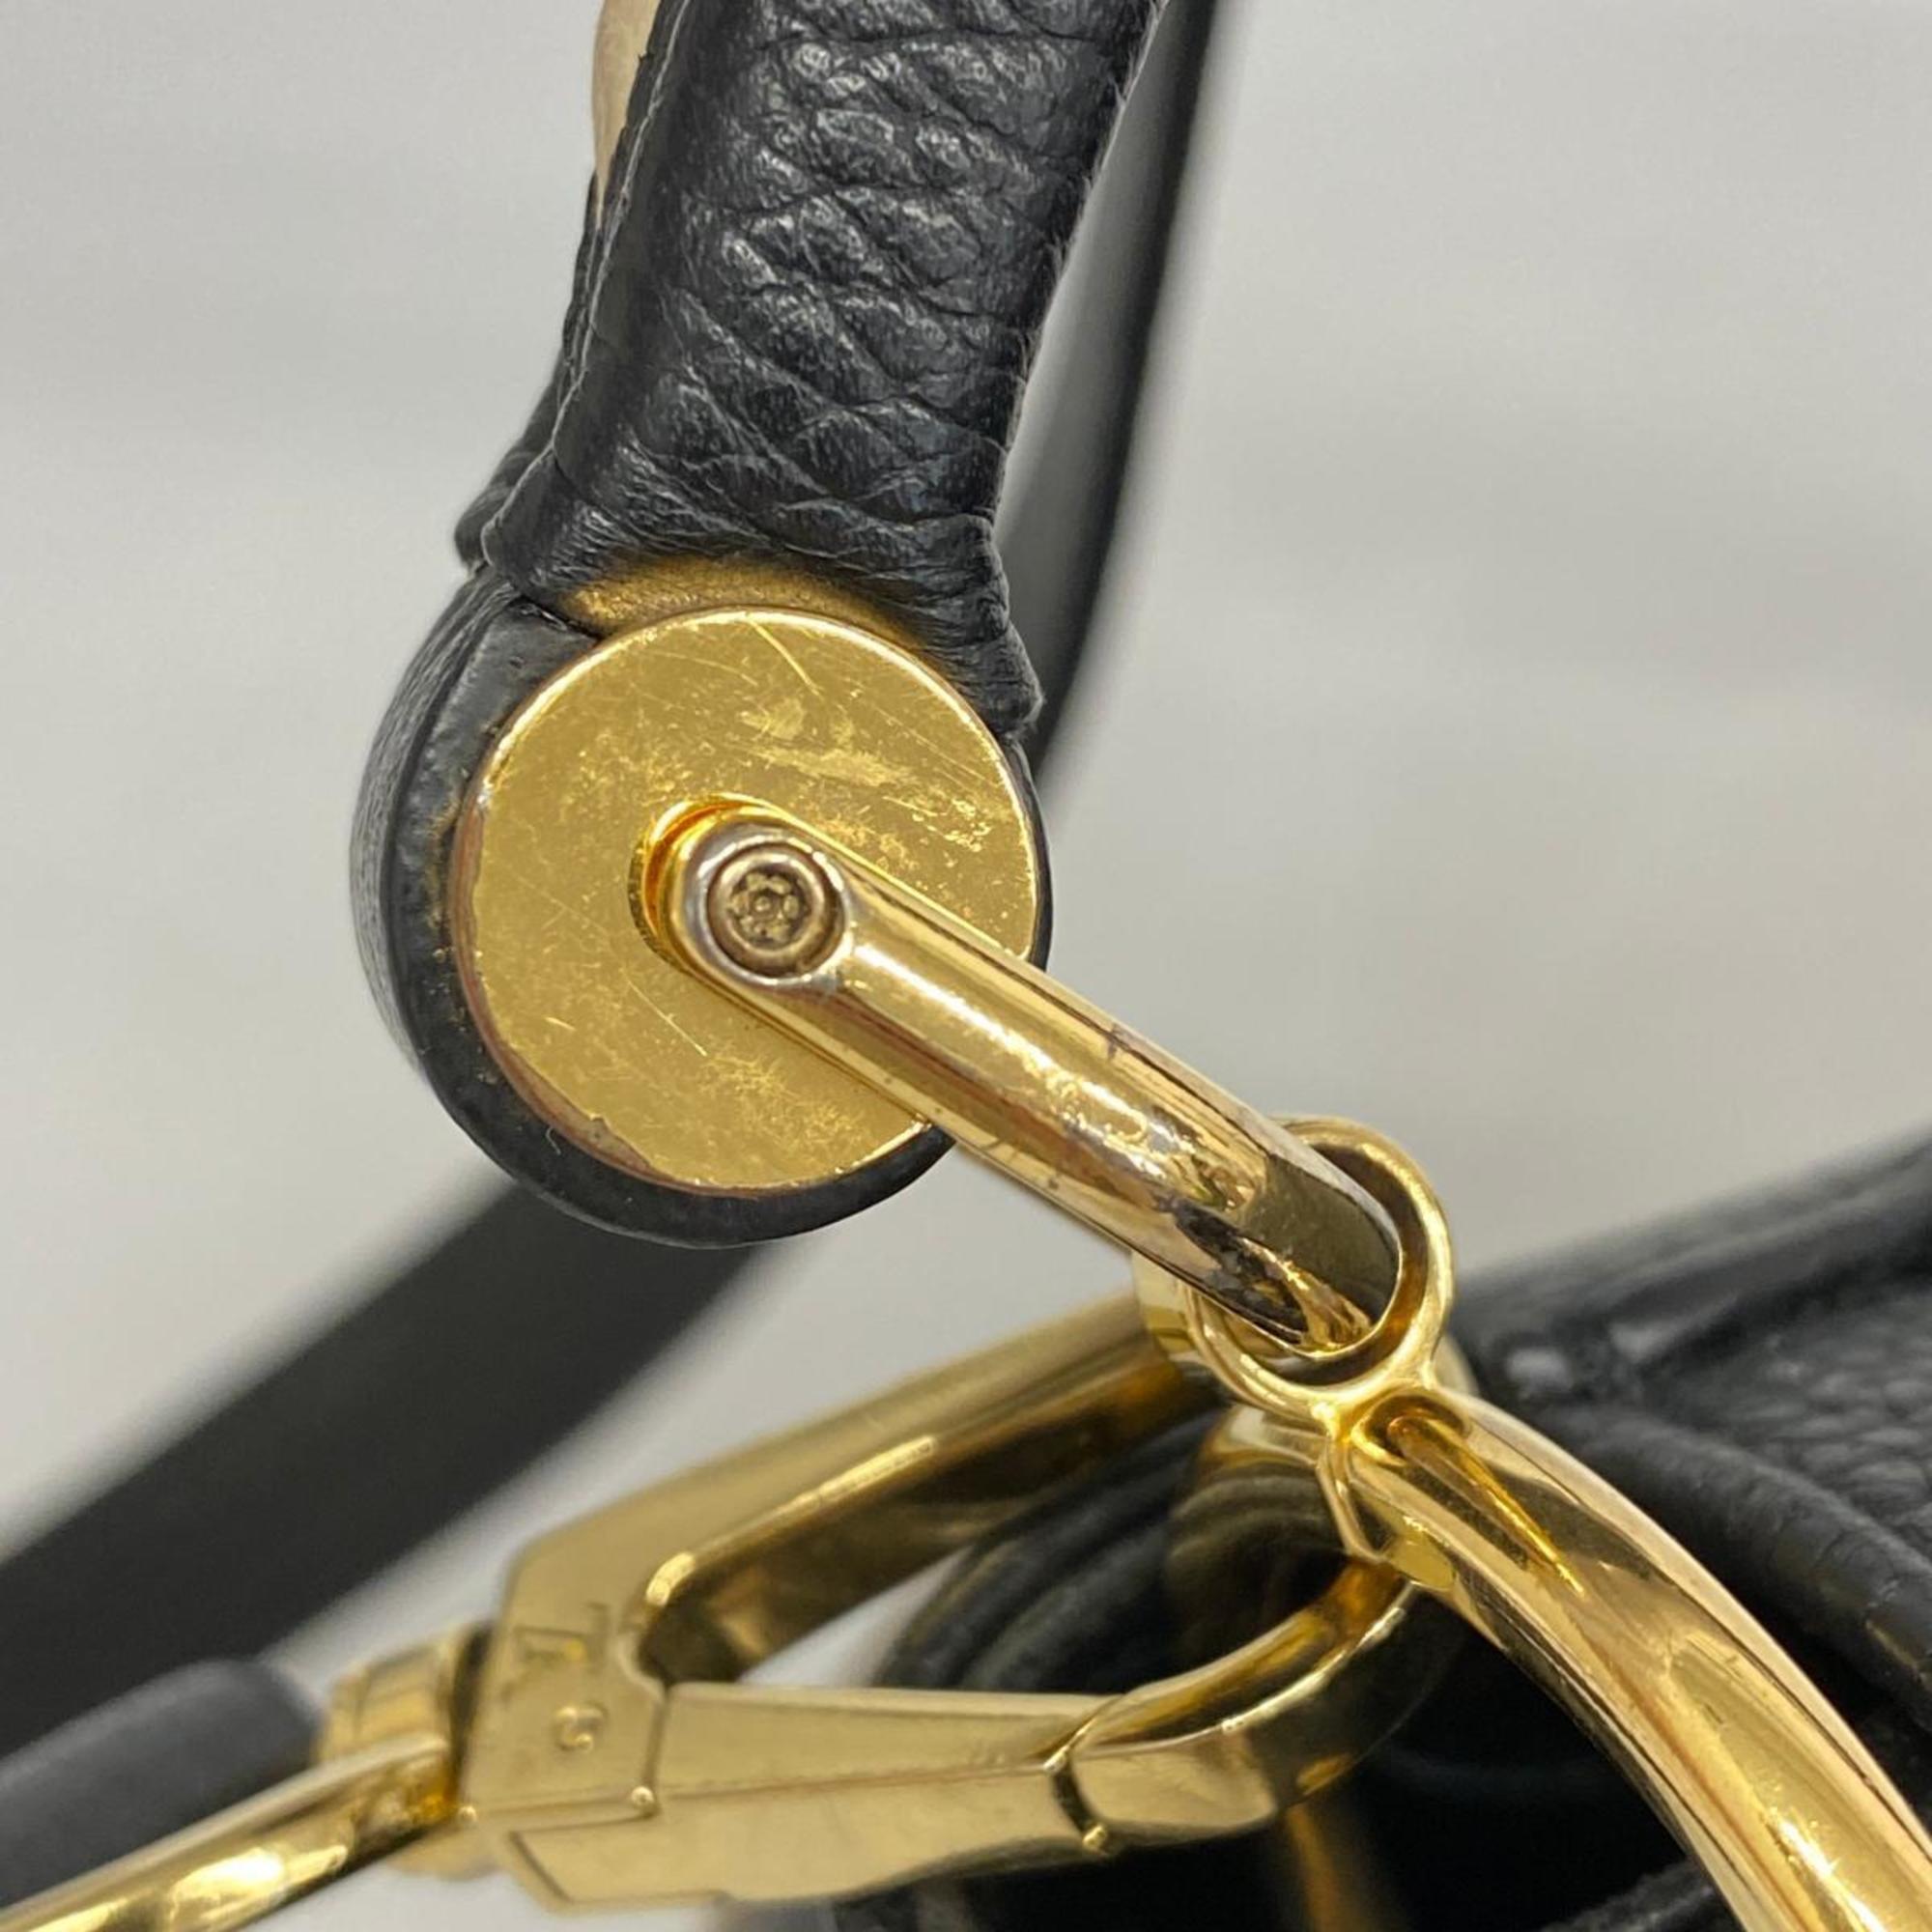 Louis Vuitton Handbag Monogram Double V M54439 Noir Brown Ladies